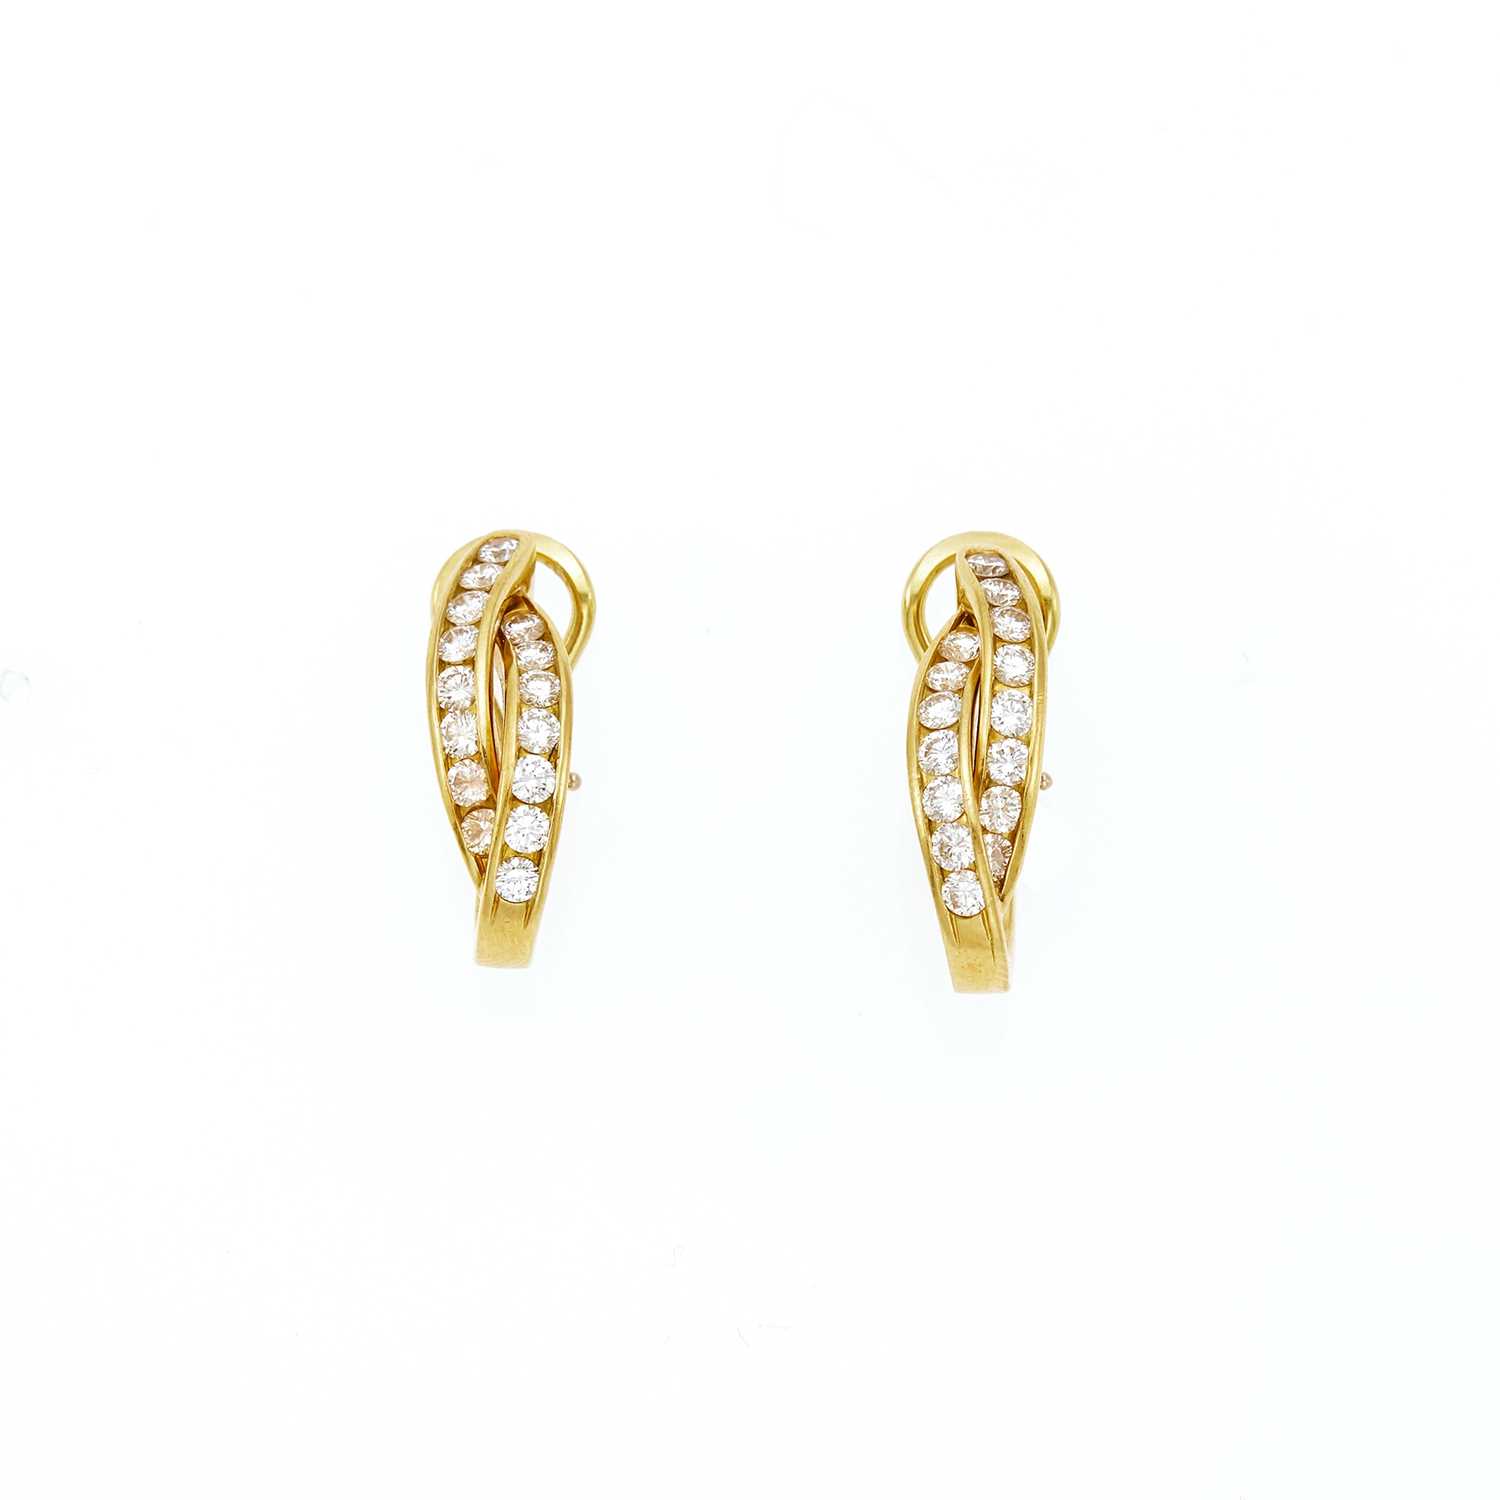 Lot 2070 - Pair of Gold and Diamond Hoop Earrings